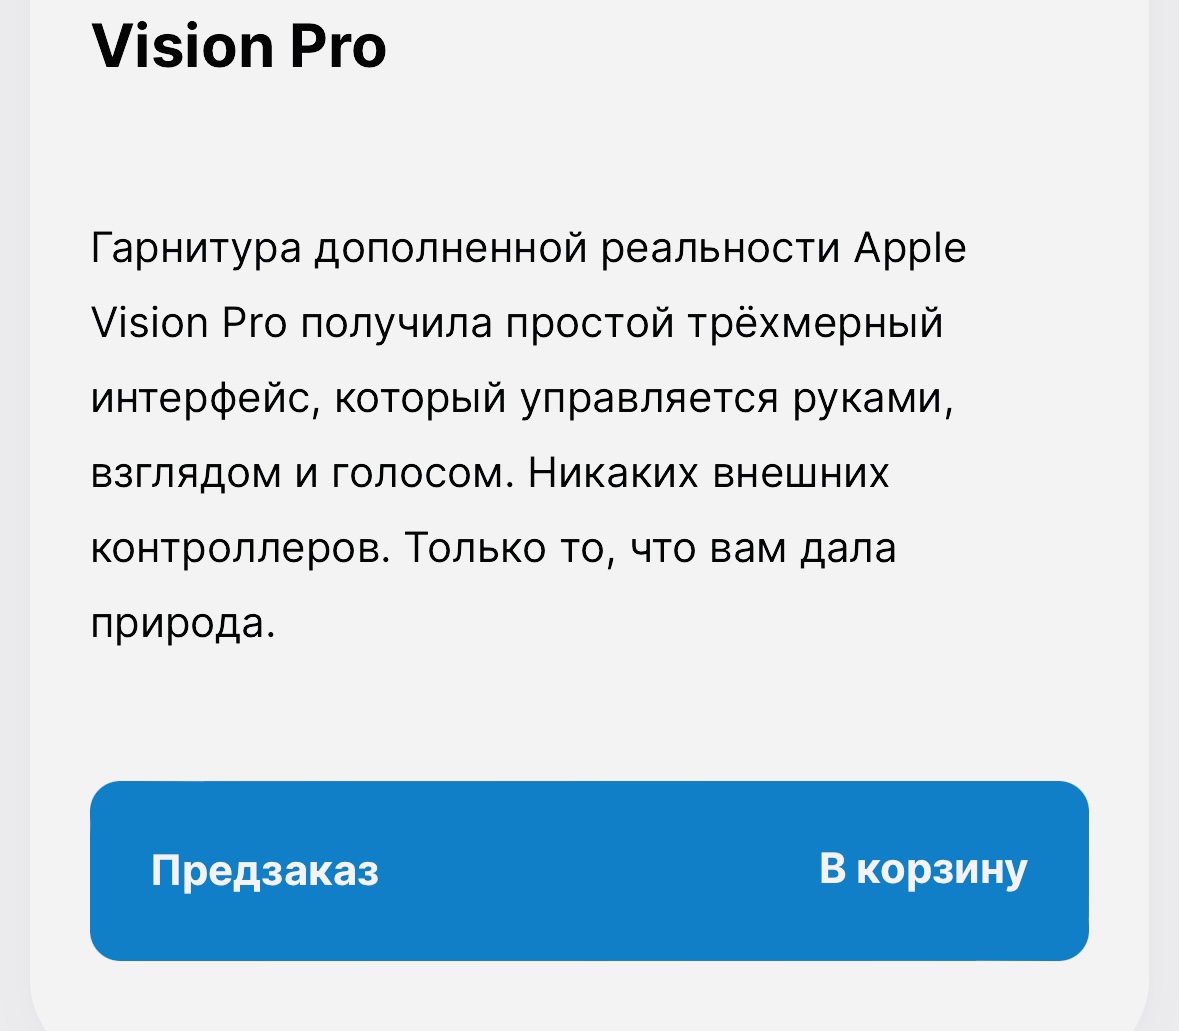 Ноунейм-магазины в России запустили предзаказ на шлем Apple Vision Pro. Стоит в два раза дороже